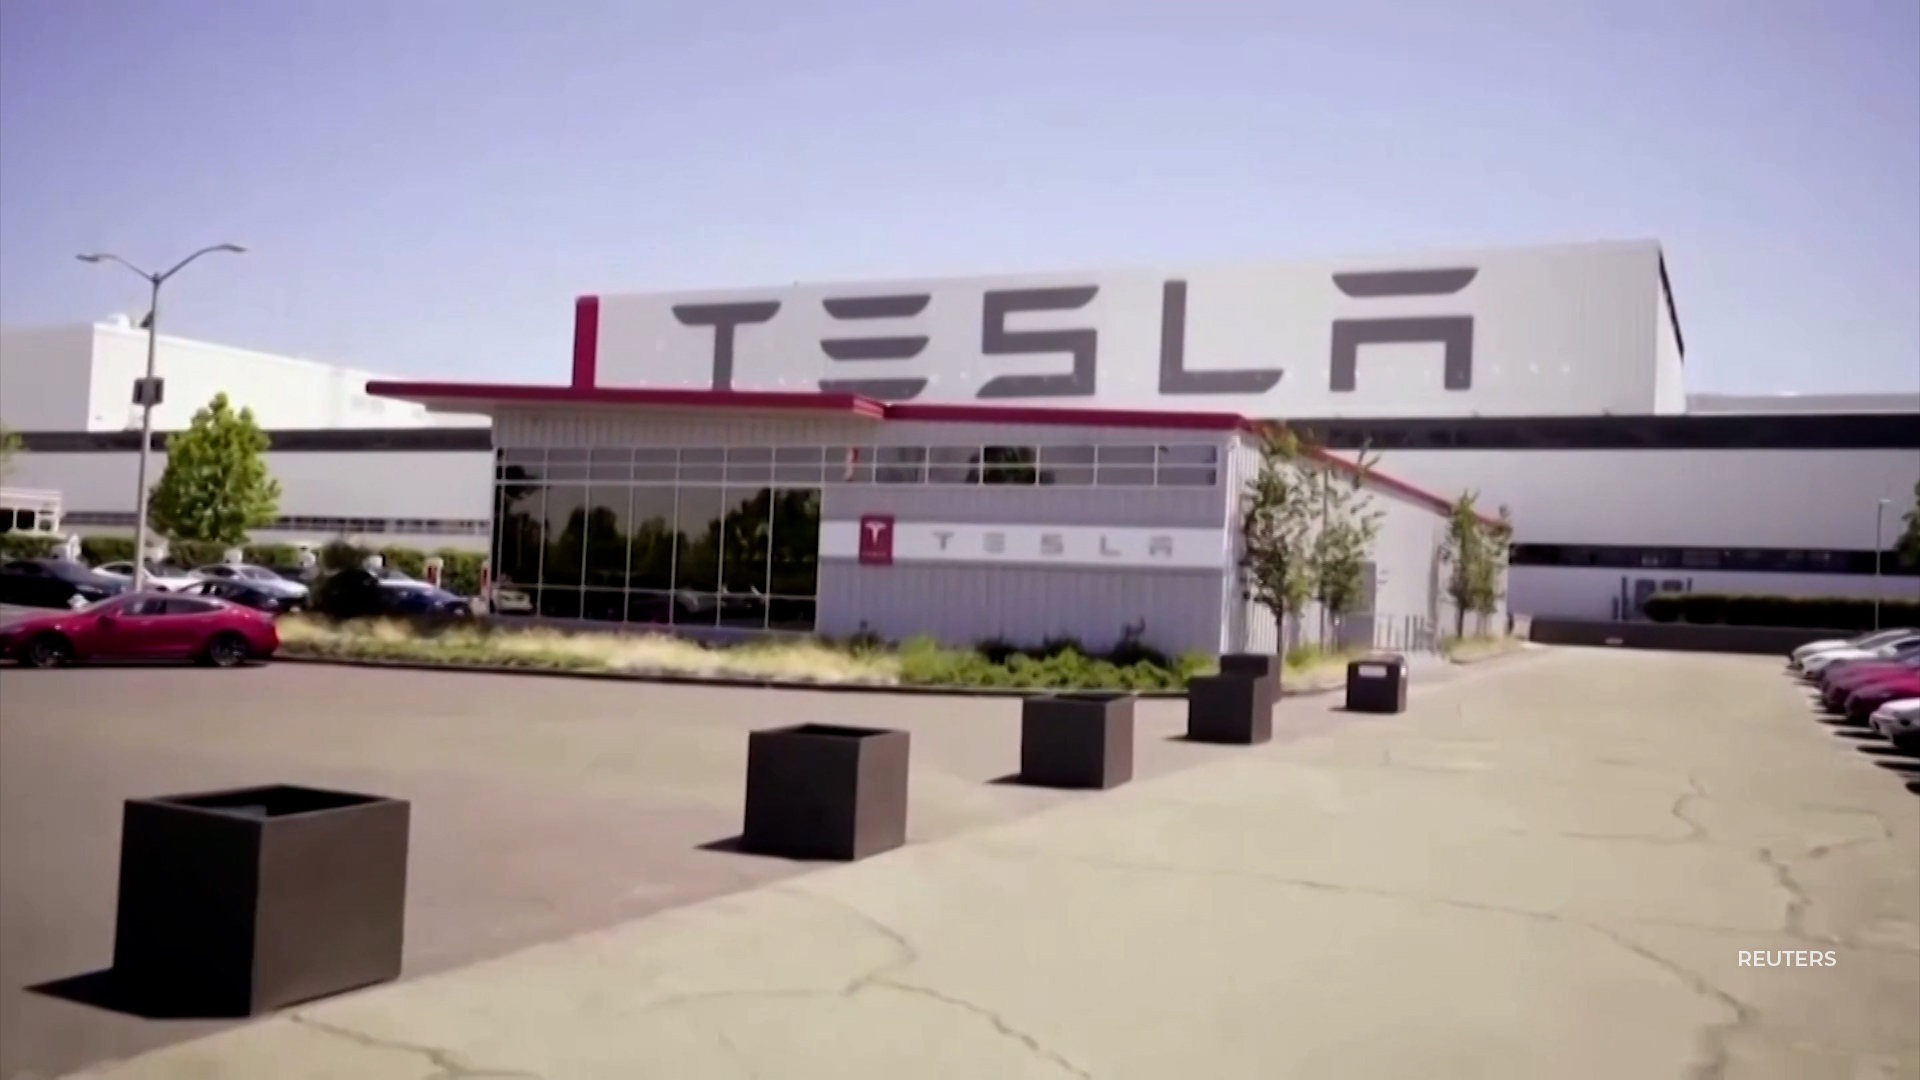 Hertz is buying 100,000 Tesla electric vehicles.